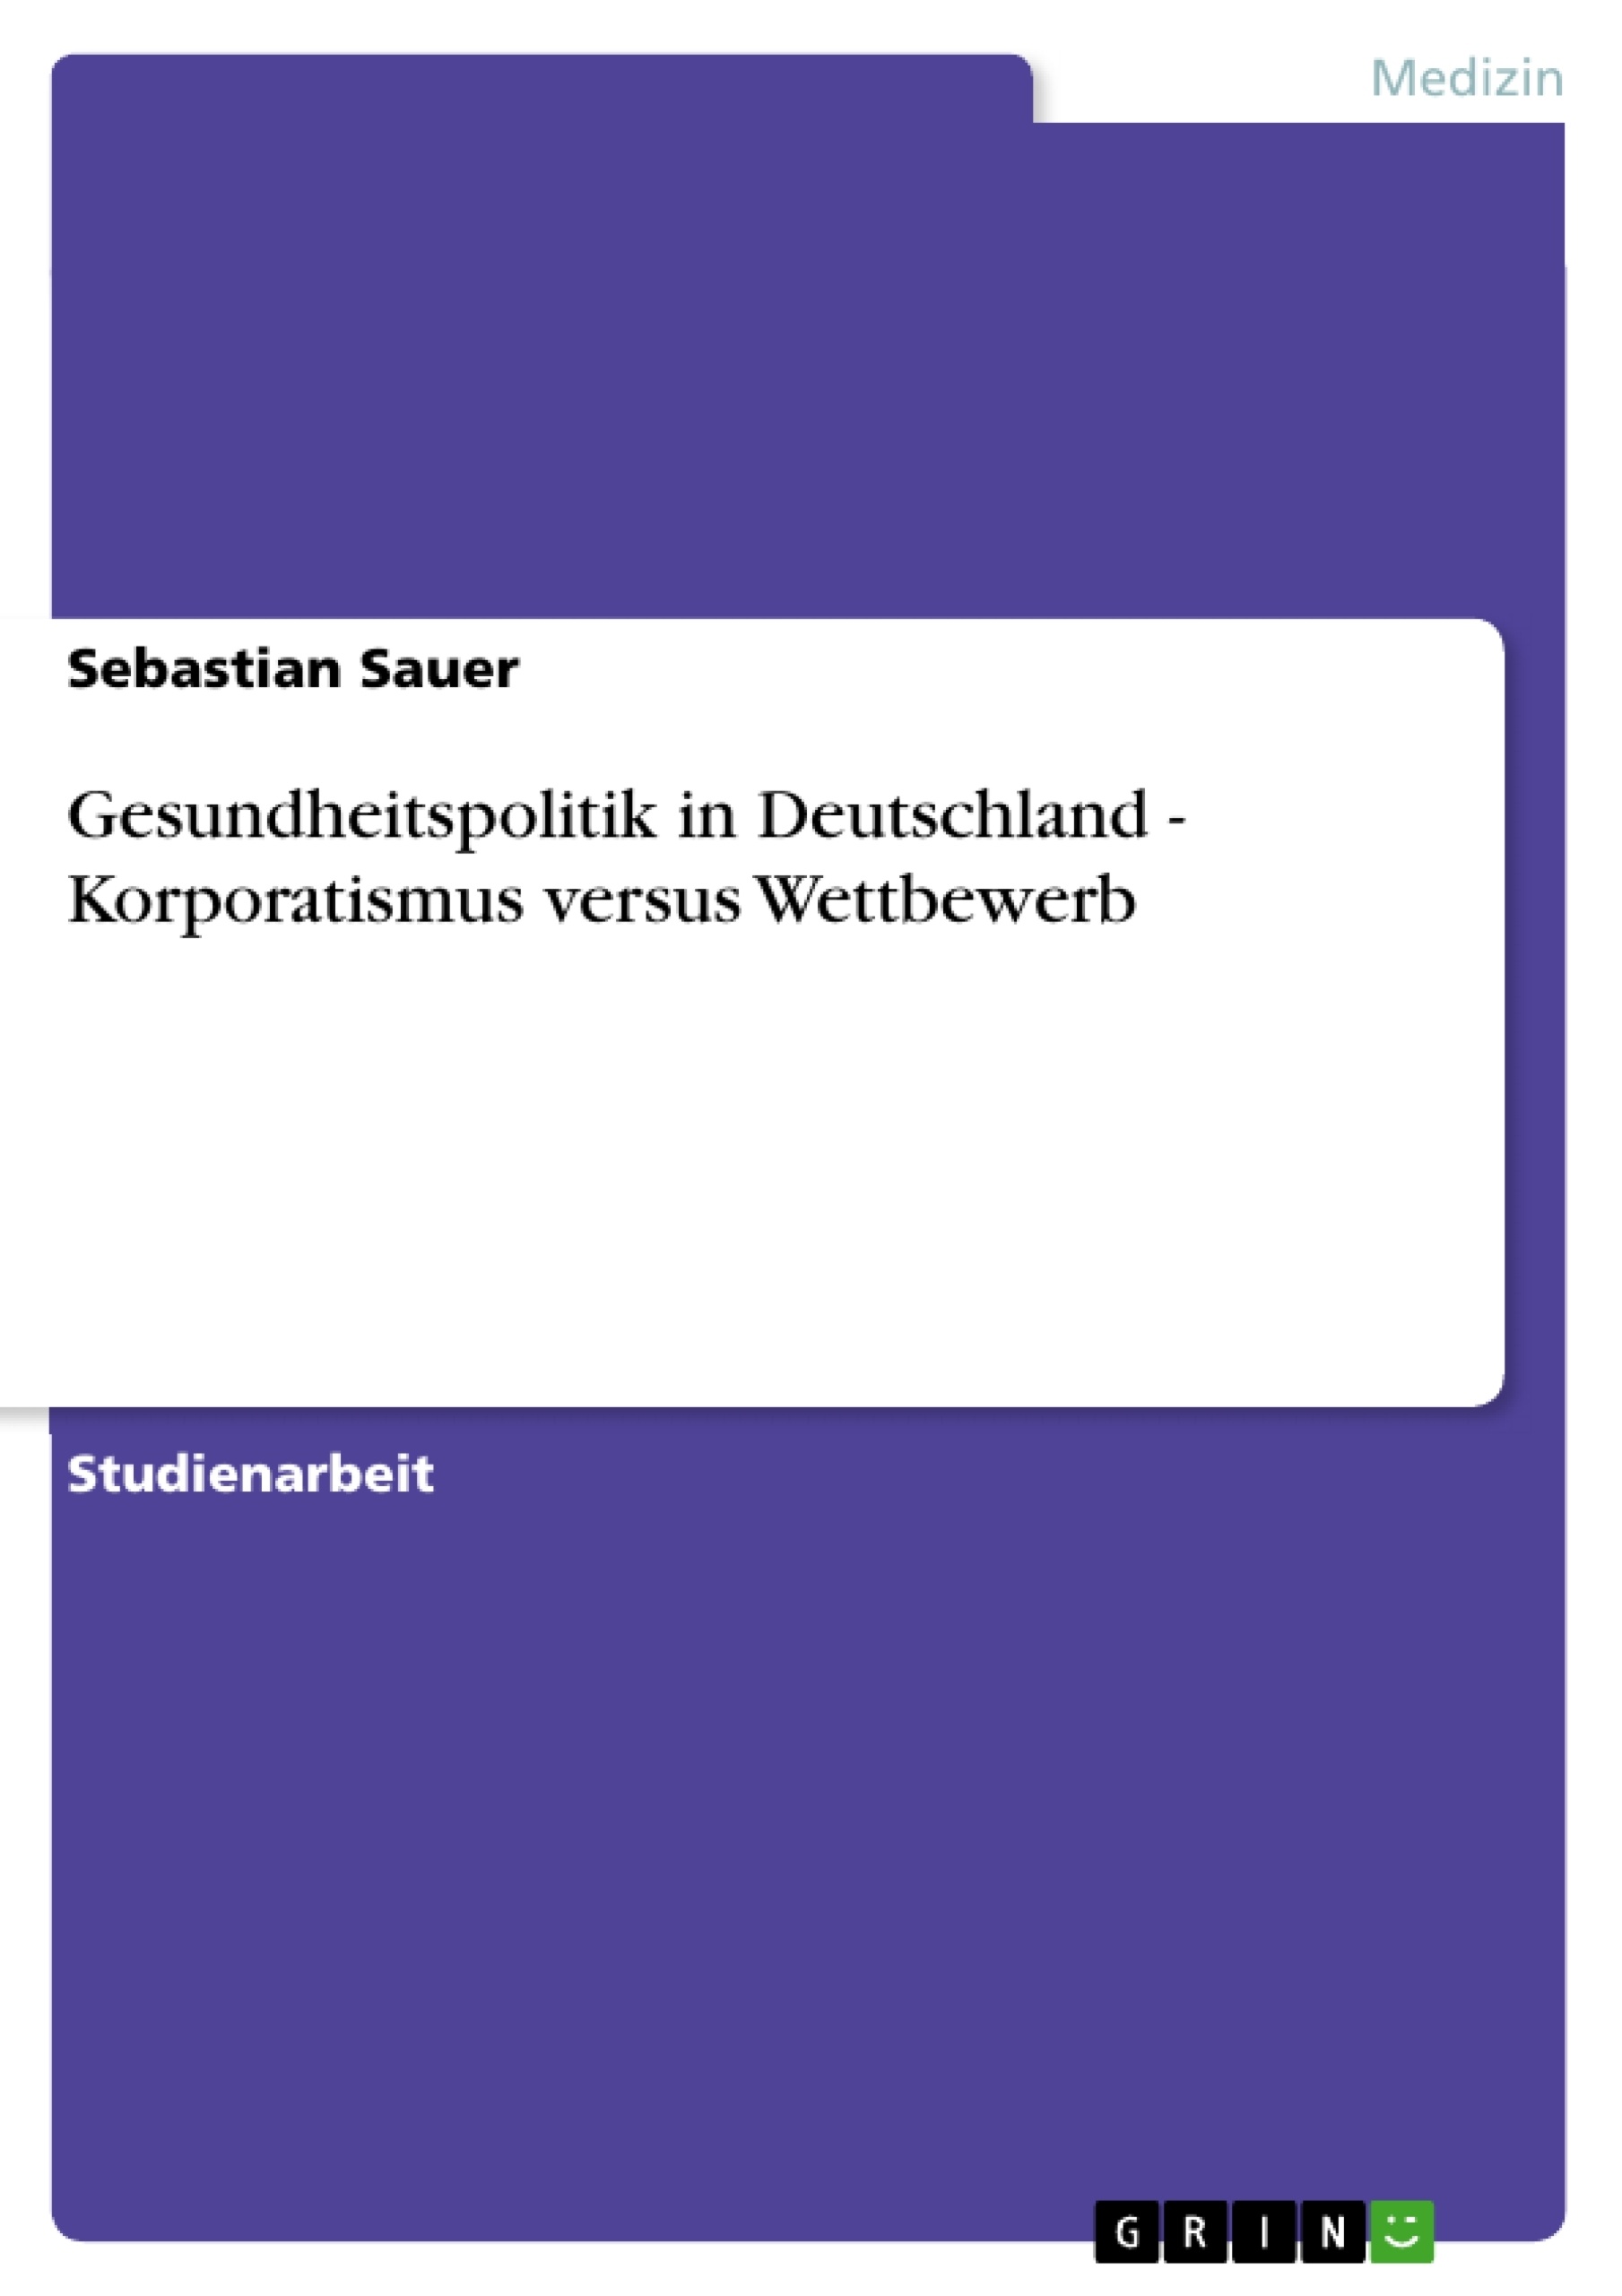 Title: Gesundheitspolitik in Deutschland - Korporatismus versus Wettbewerb